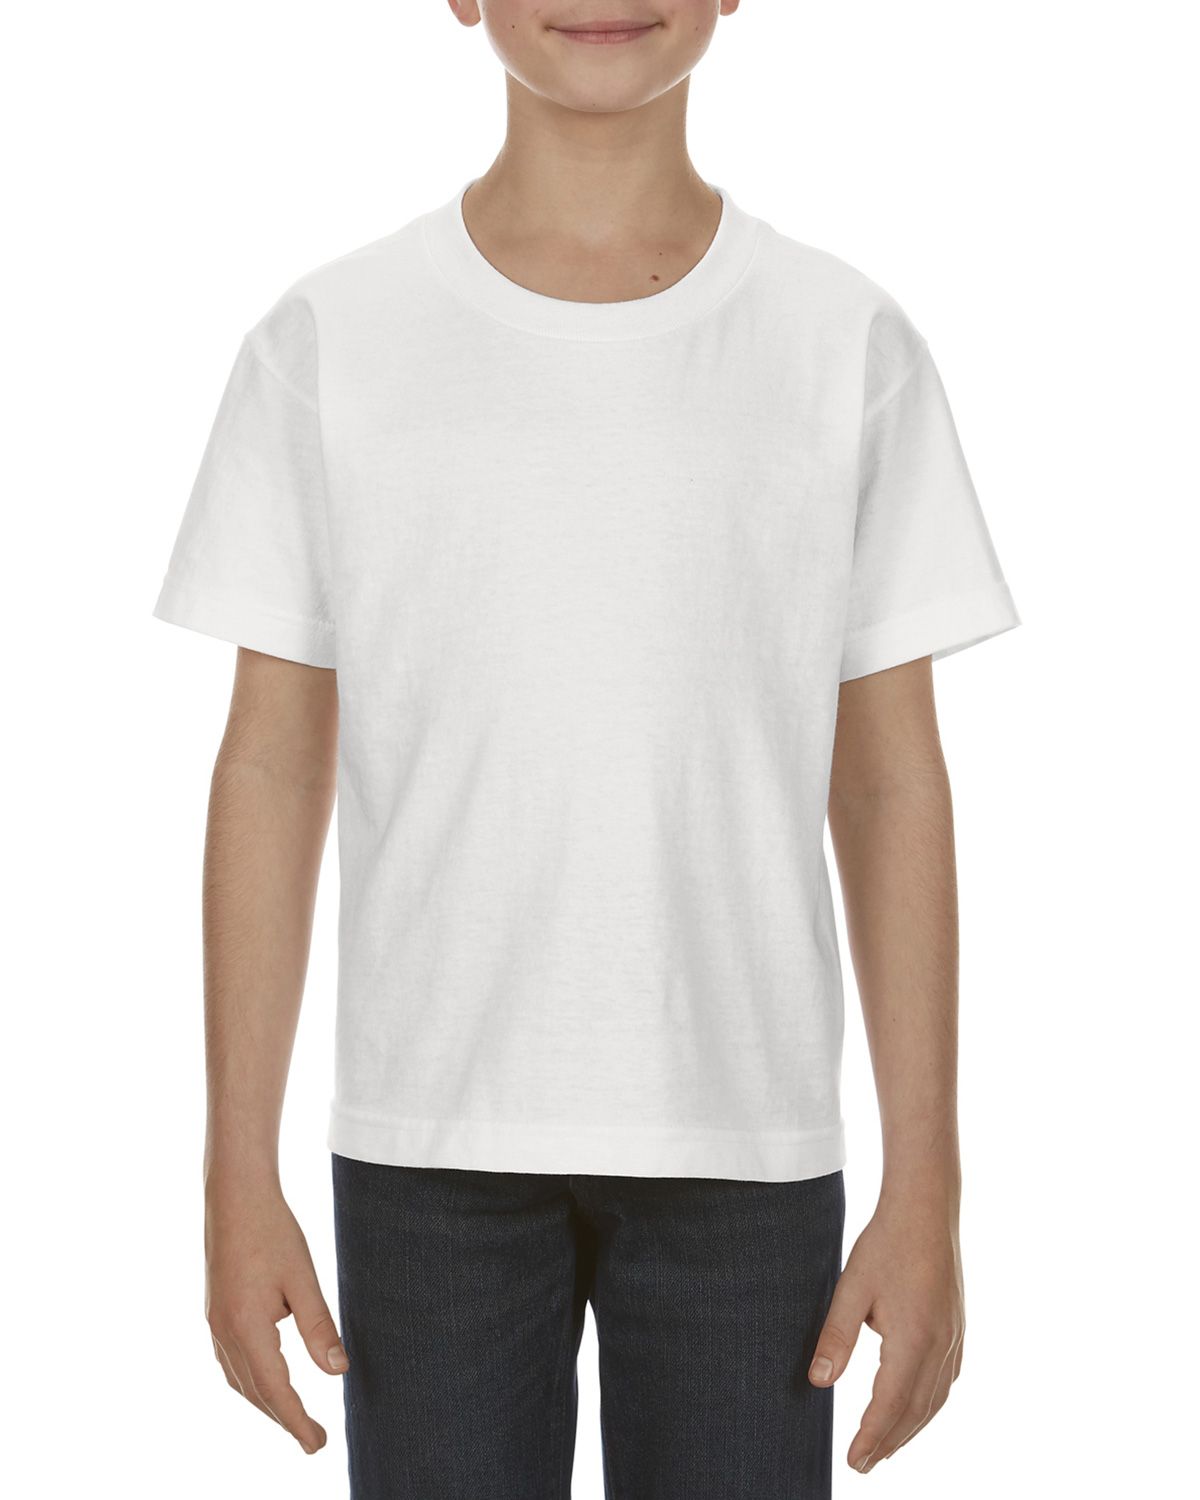 Alstyle AL3381 Youth 6.0 oz. 100% Cotton T-Shirt